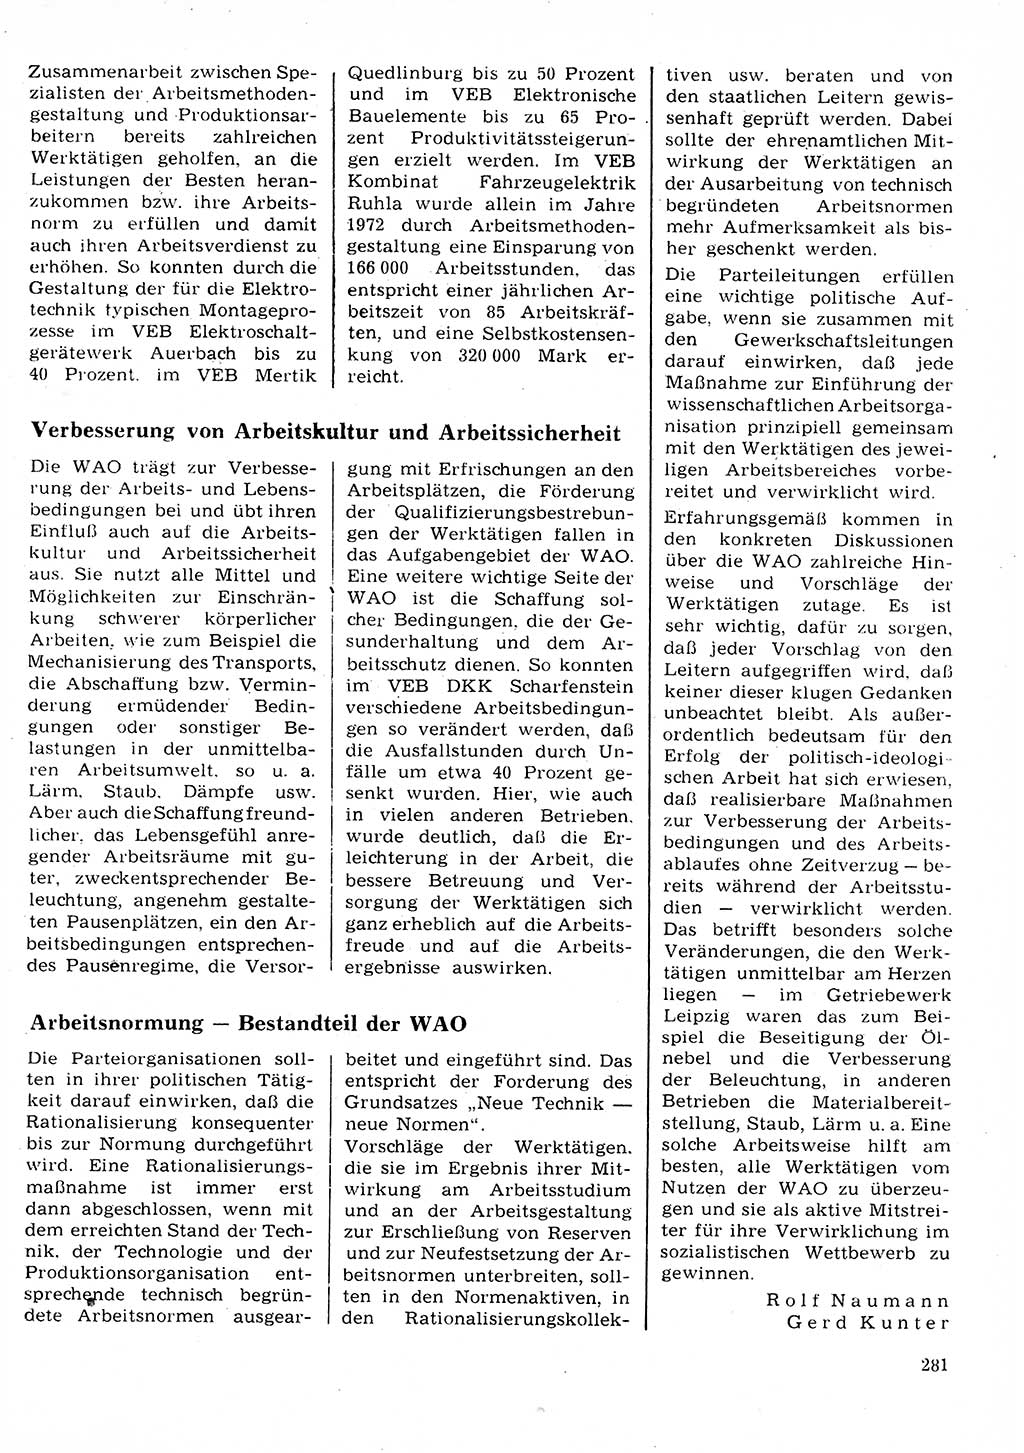 Neuer Weg (NW), Organ des Zentralkomitees (ZK) der SED (Sozialistische Einheitspartei Deutschlands) für Fragen des Parteilebens, 28. Jahrgang [Deutsche Demokratische Republik (DDR)] 1973, Seite 281 (NW ZK SED DDR 1973, S. 281)